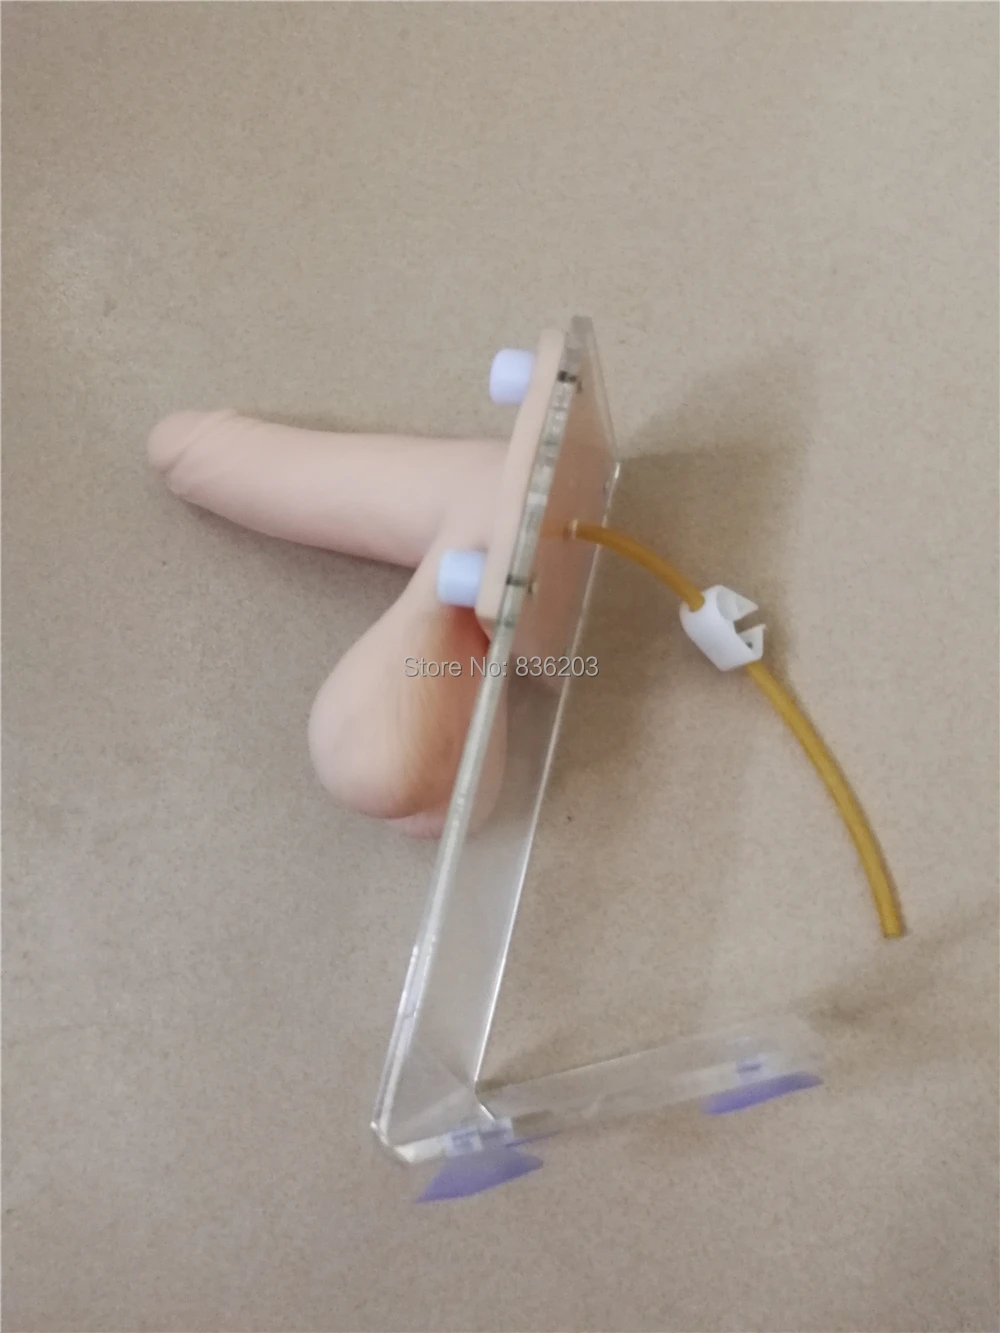 Мужской презерватив в натуральную величину, тренировочная модель пениса, травматический пистолет, медицинский скелет, травма, анатомия, медицинские инструменты, анатомия